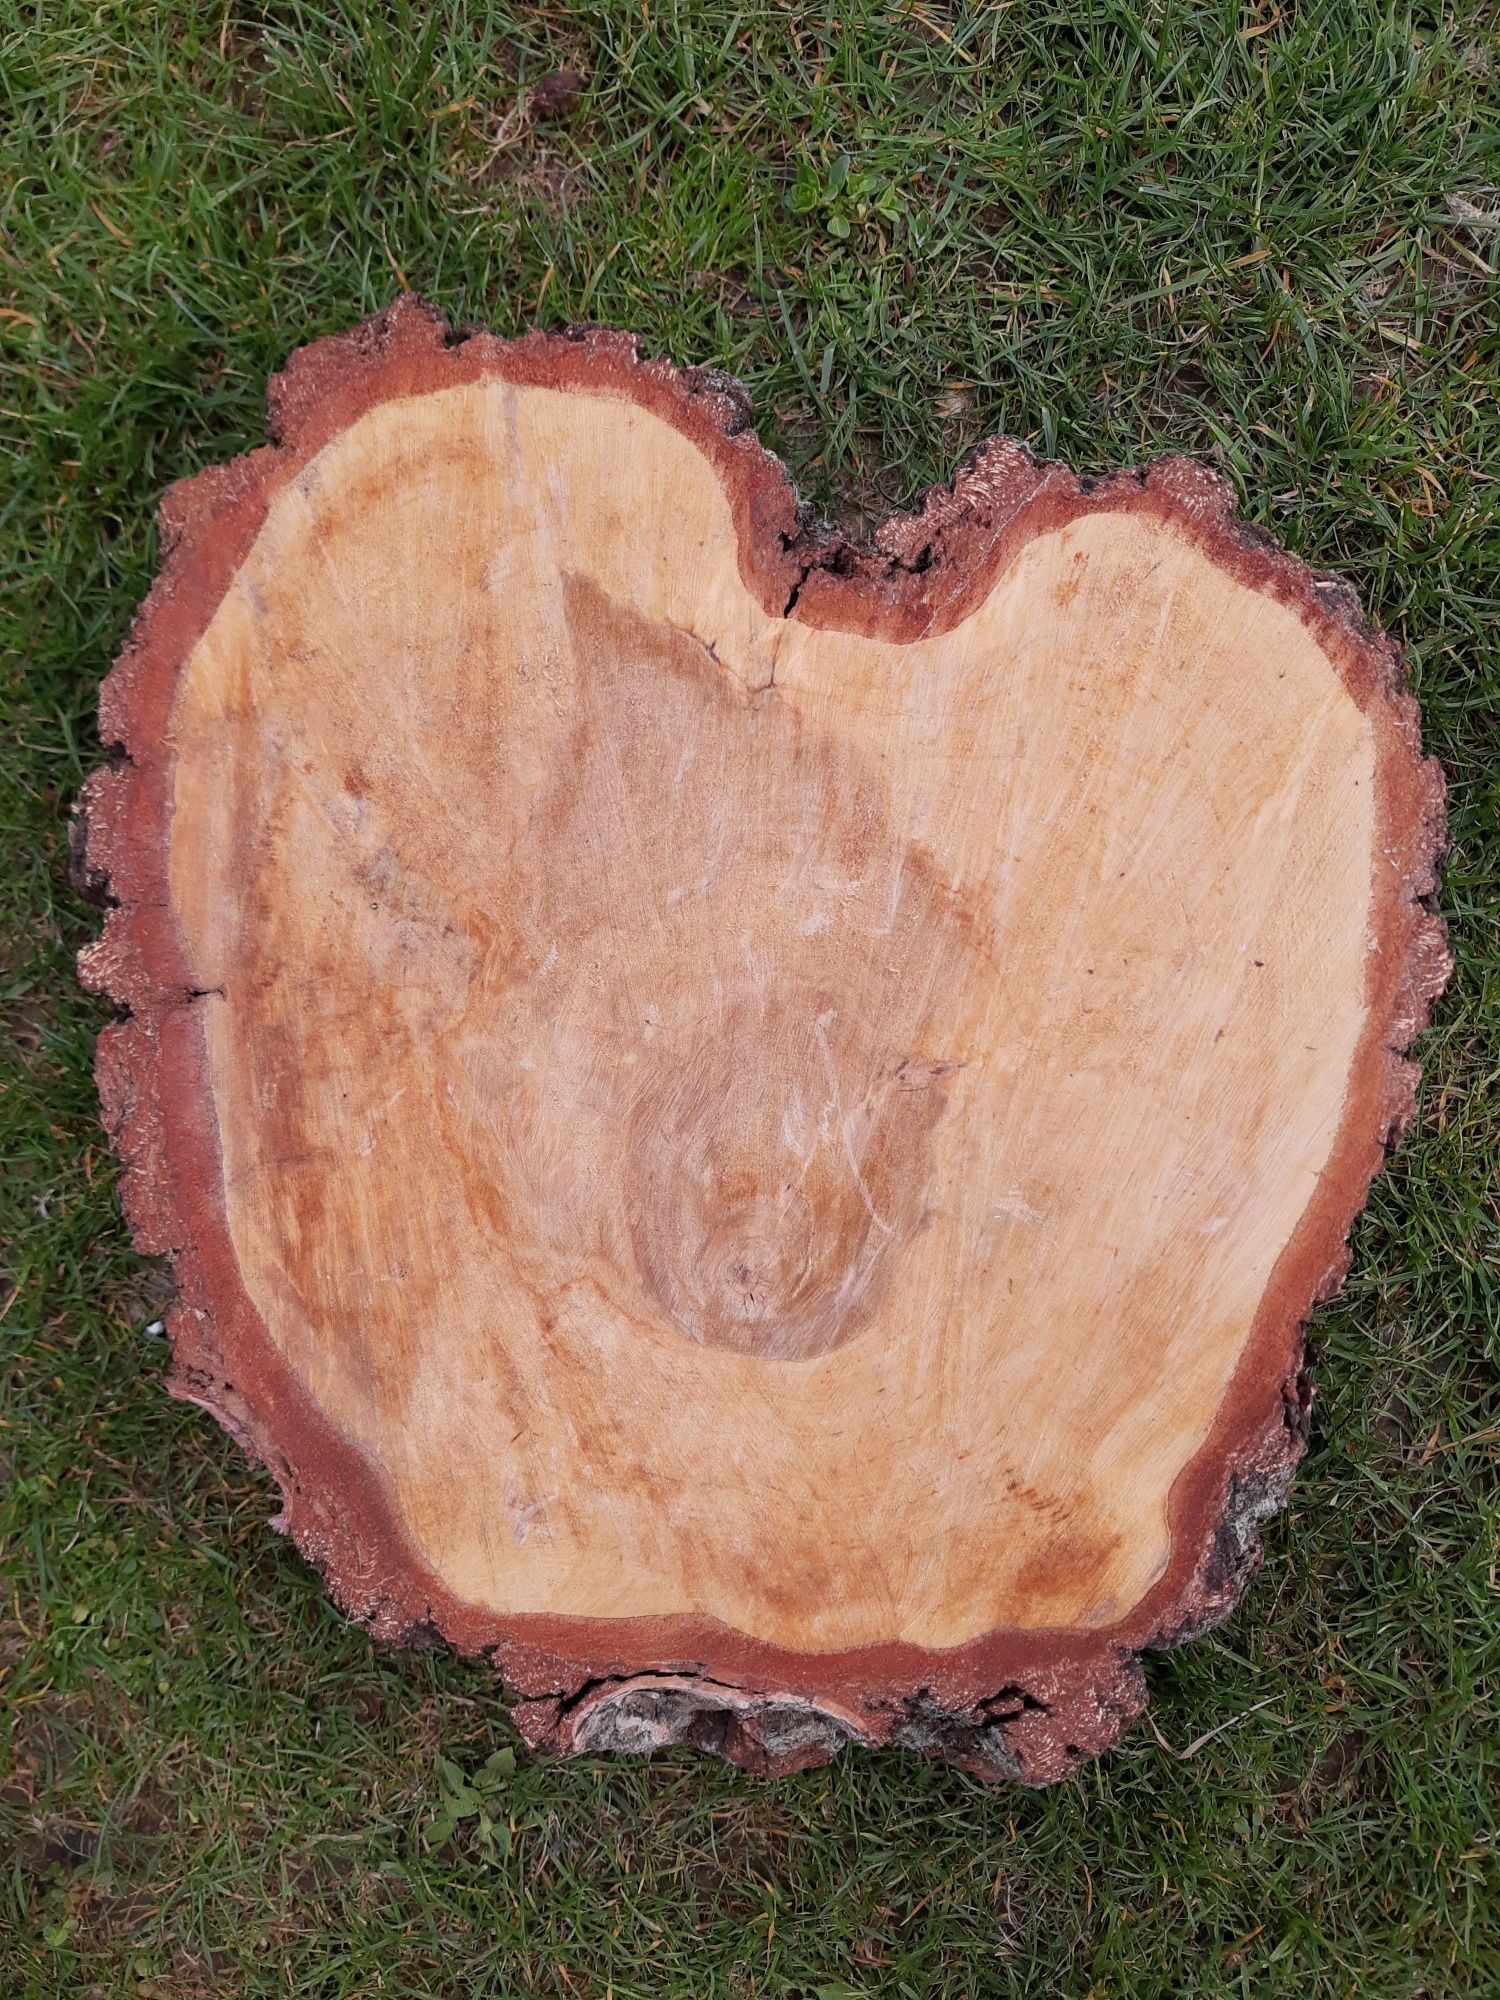 Plaster drewna w kształcie serca z brzozy